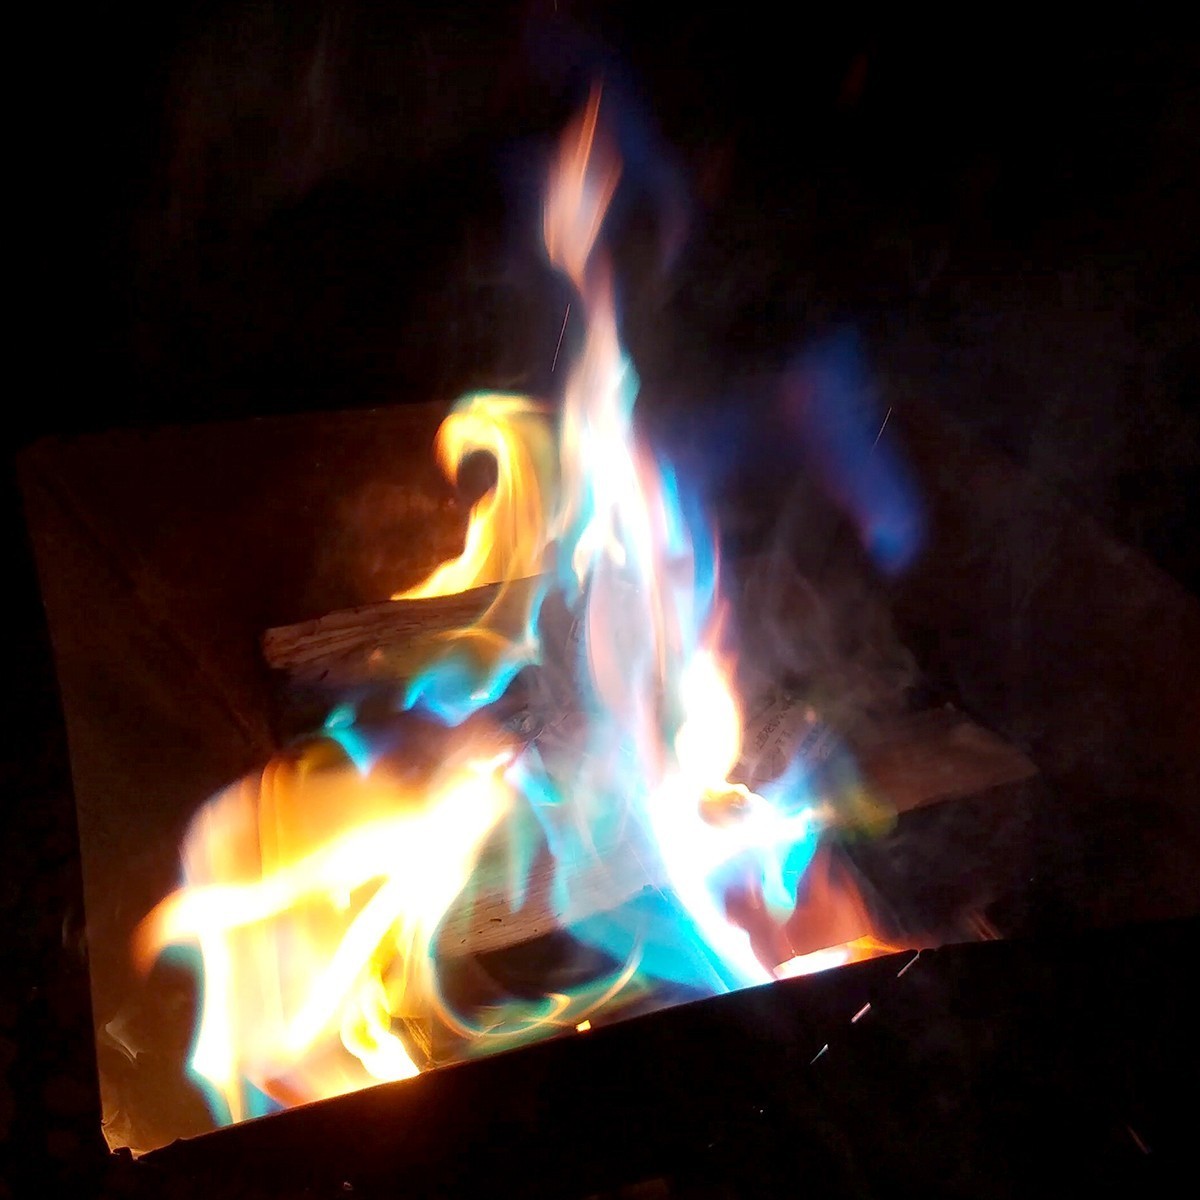 カラーフレイム 25g 8個入り 炎の色がカラフルに! 魔法の粉 たきび 虹色 レインボー 焚き火台 キャンプ